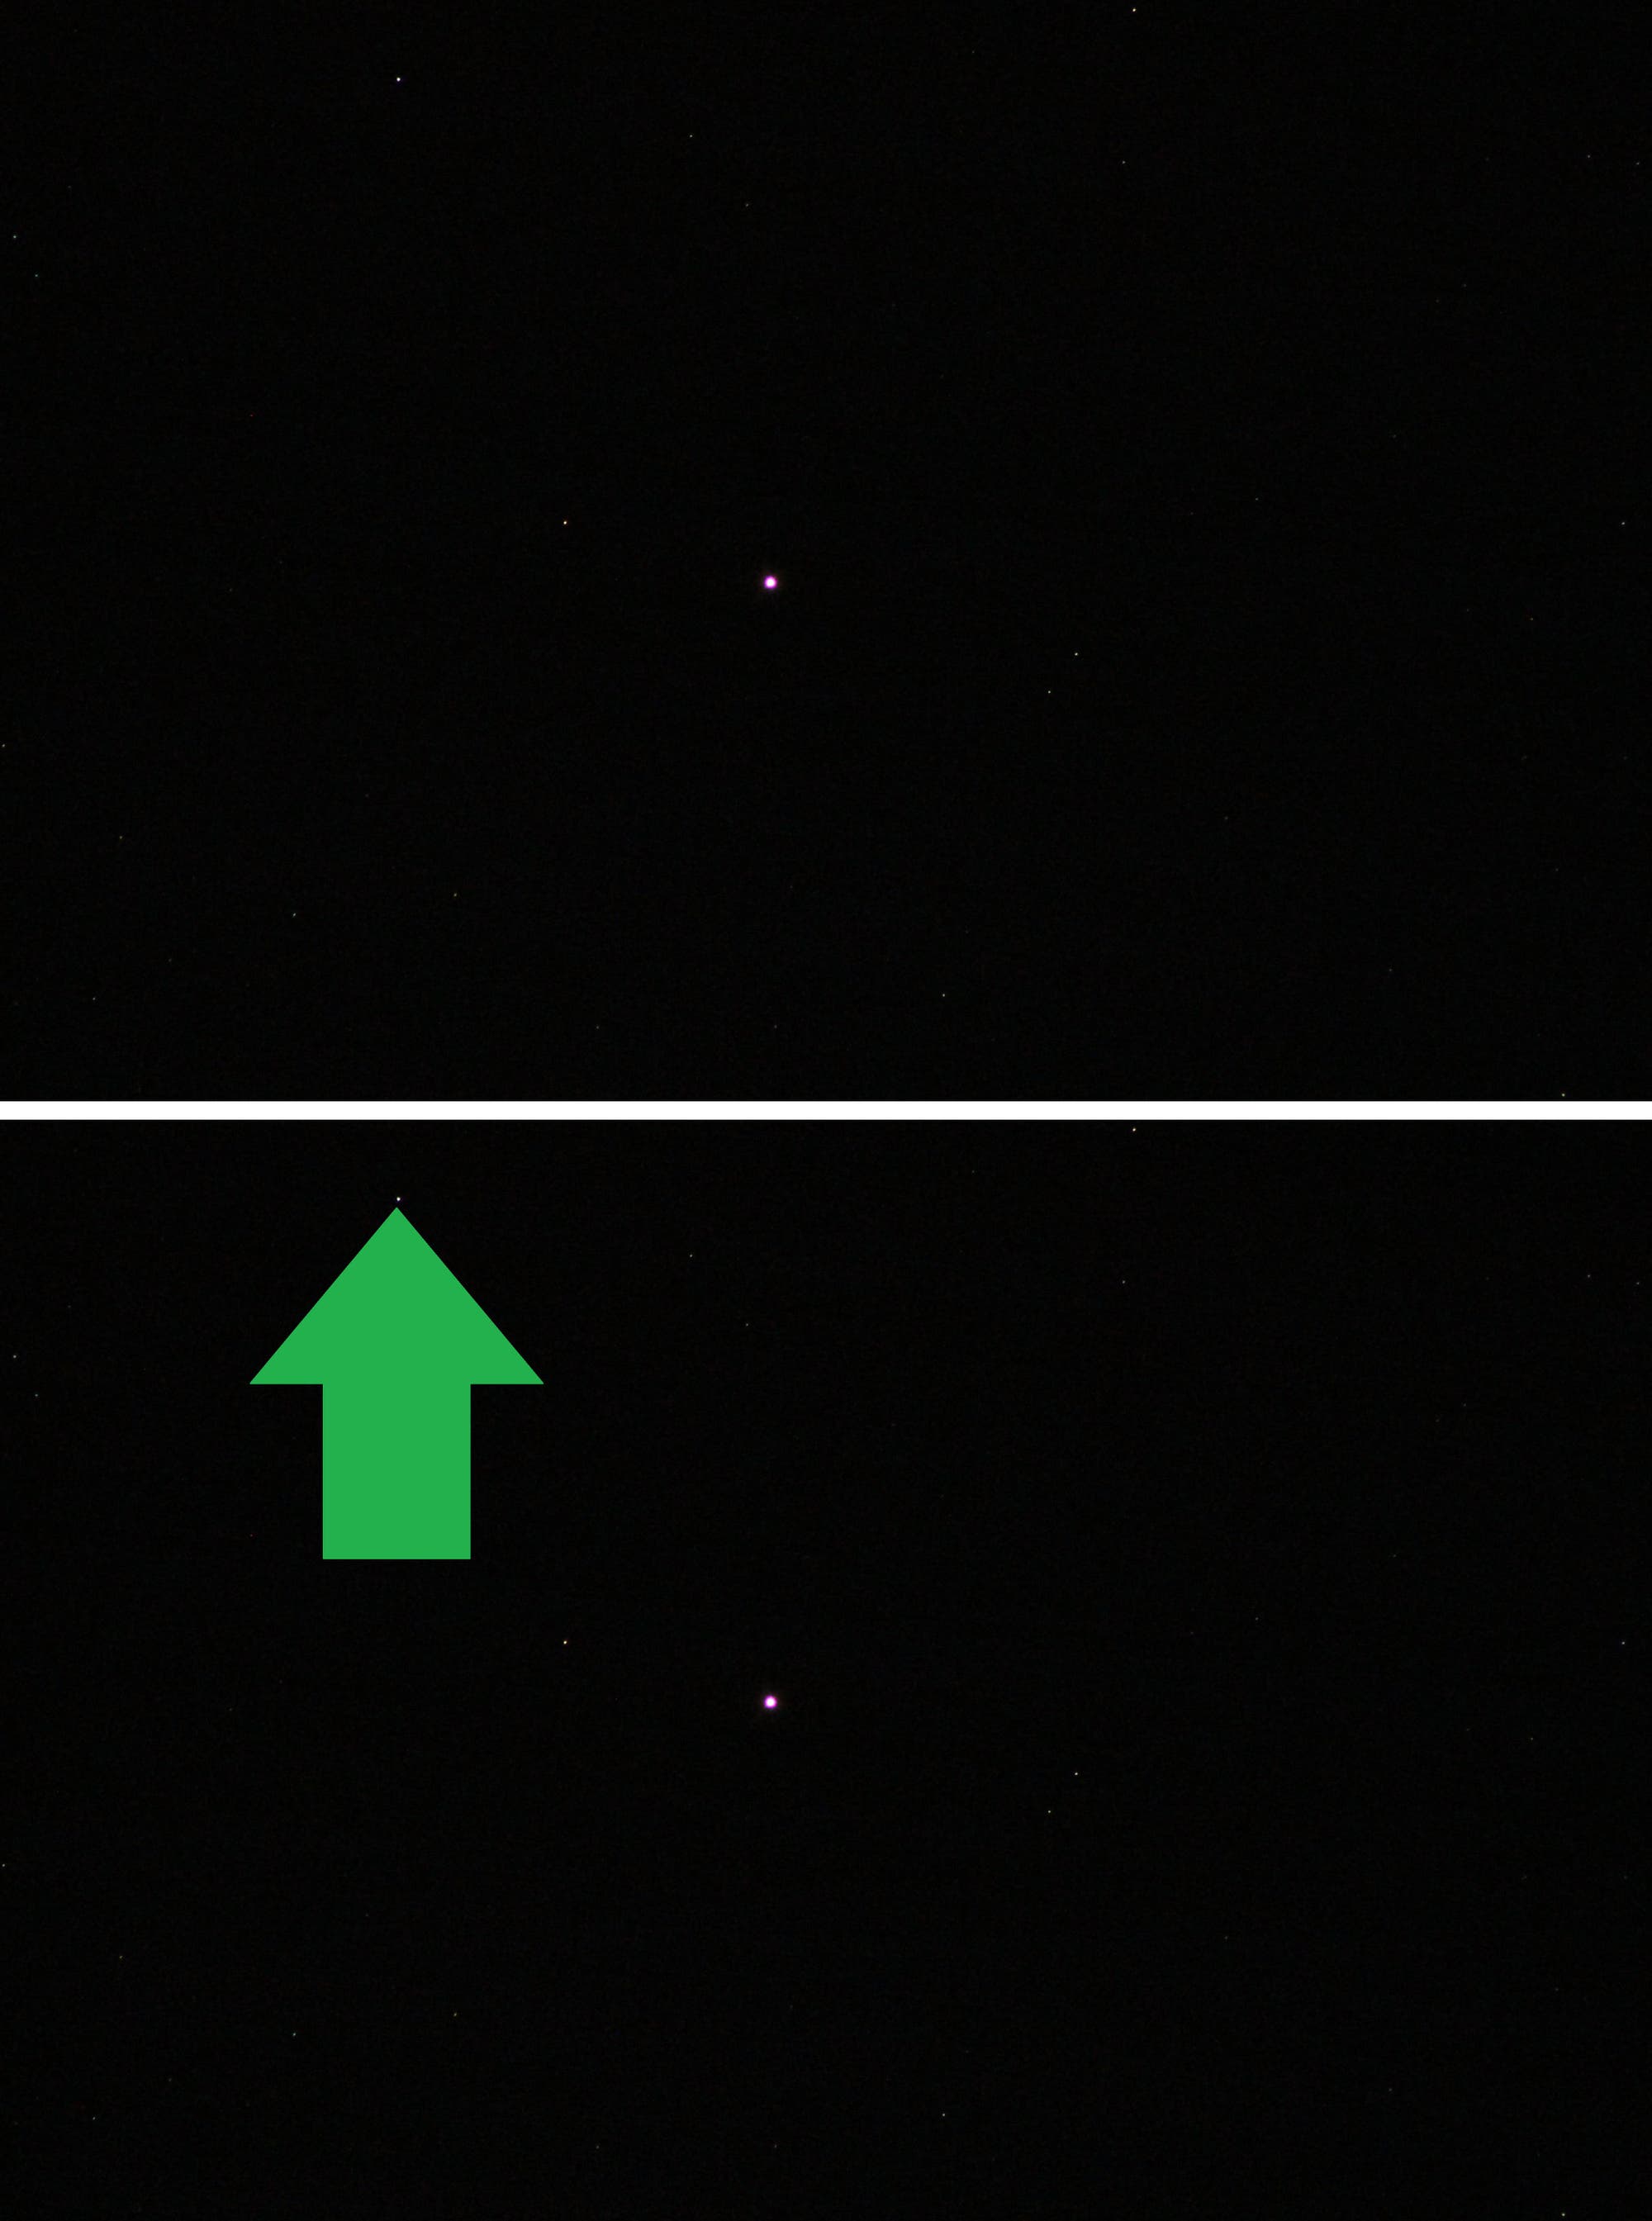 Konjunktion der Planeten Mars und Uranus - Aufnahme mit langbrennweitigem Teleobjektiv